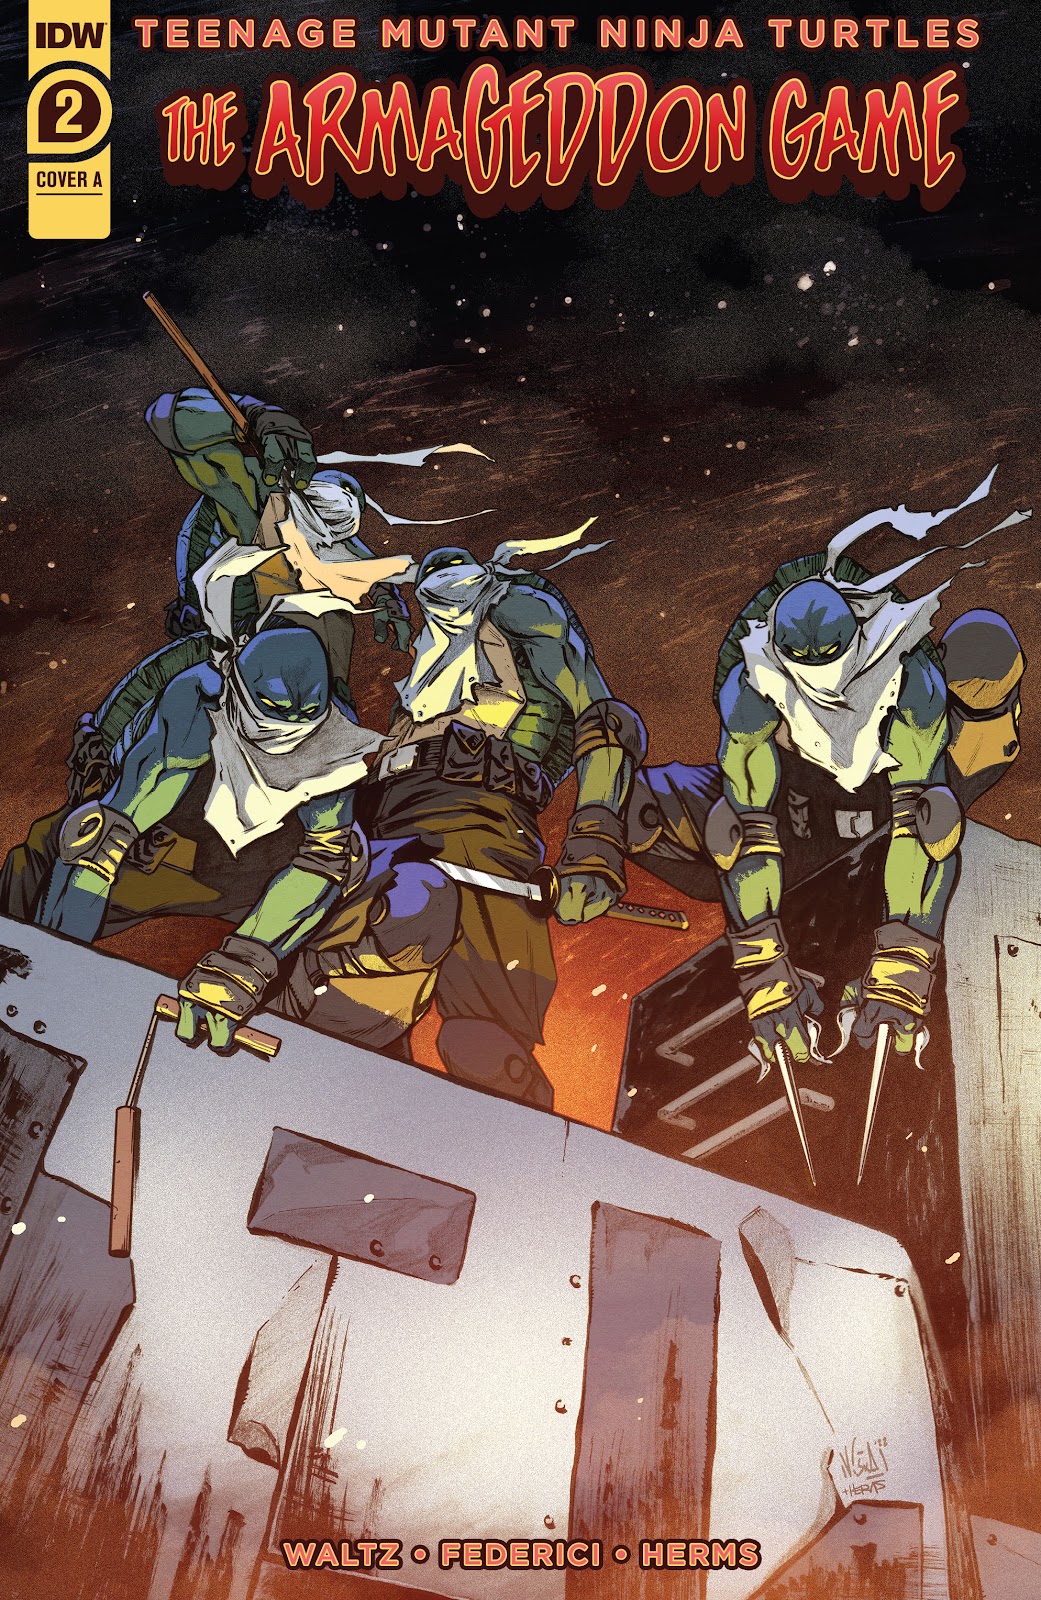 Teenage Mutant Ninja Turtles: The Armageddon Game issue 2 - Page 1